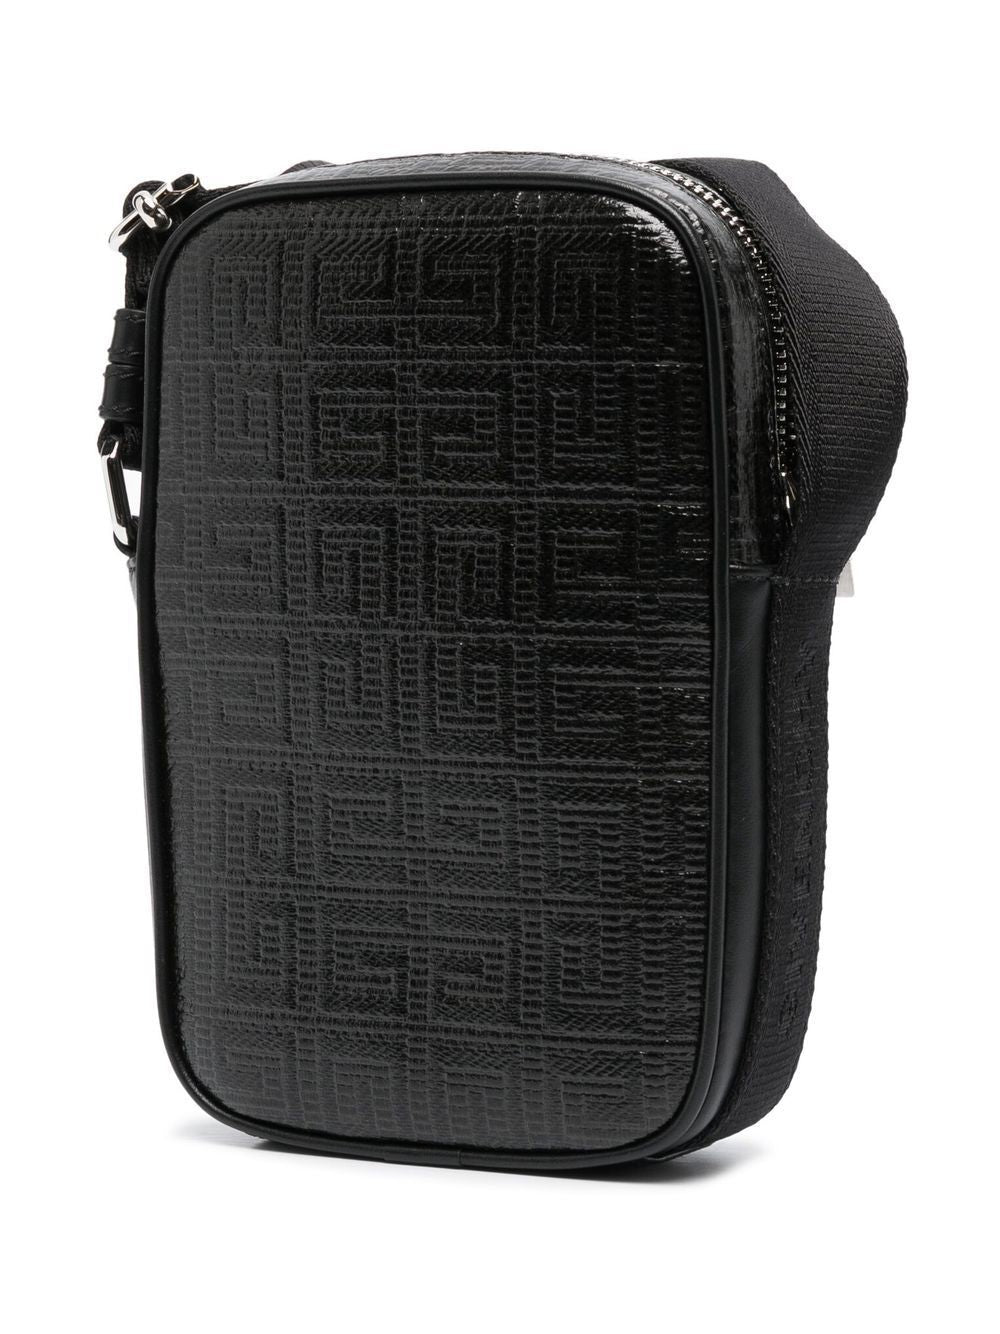 Givenchy Men's 'g-essentials' Shoulder Bag - Black - Messenger